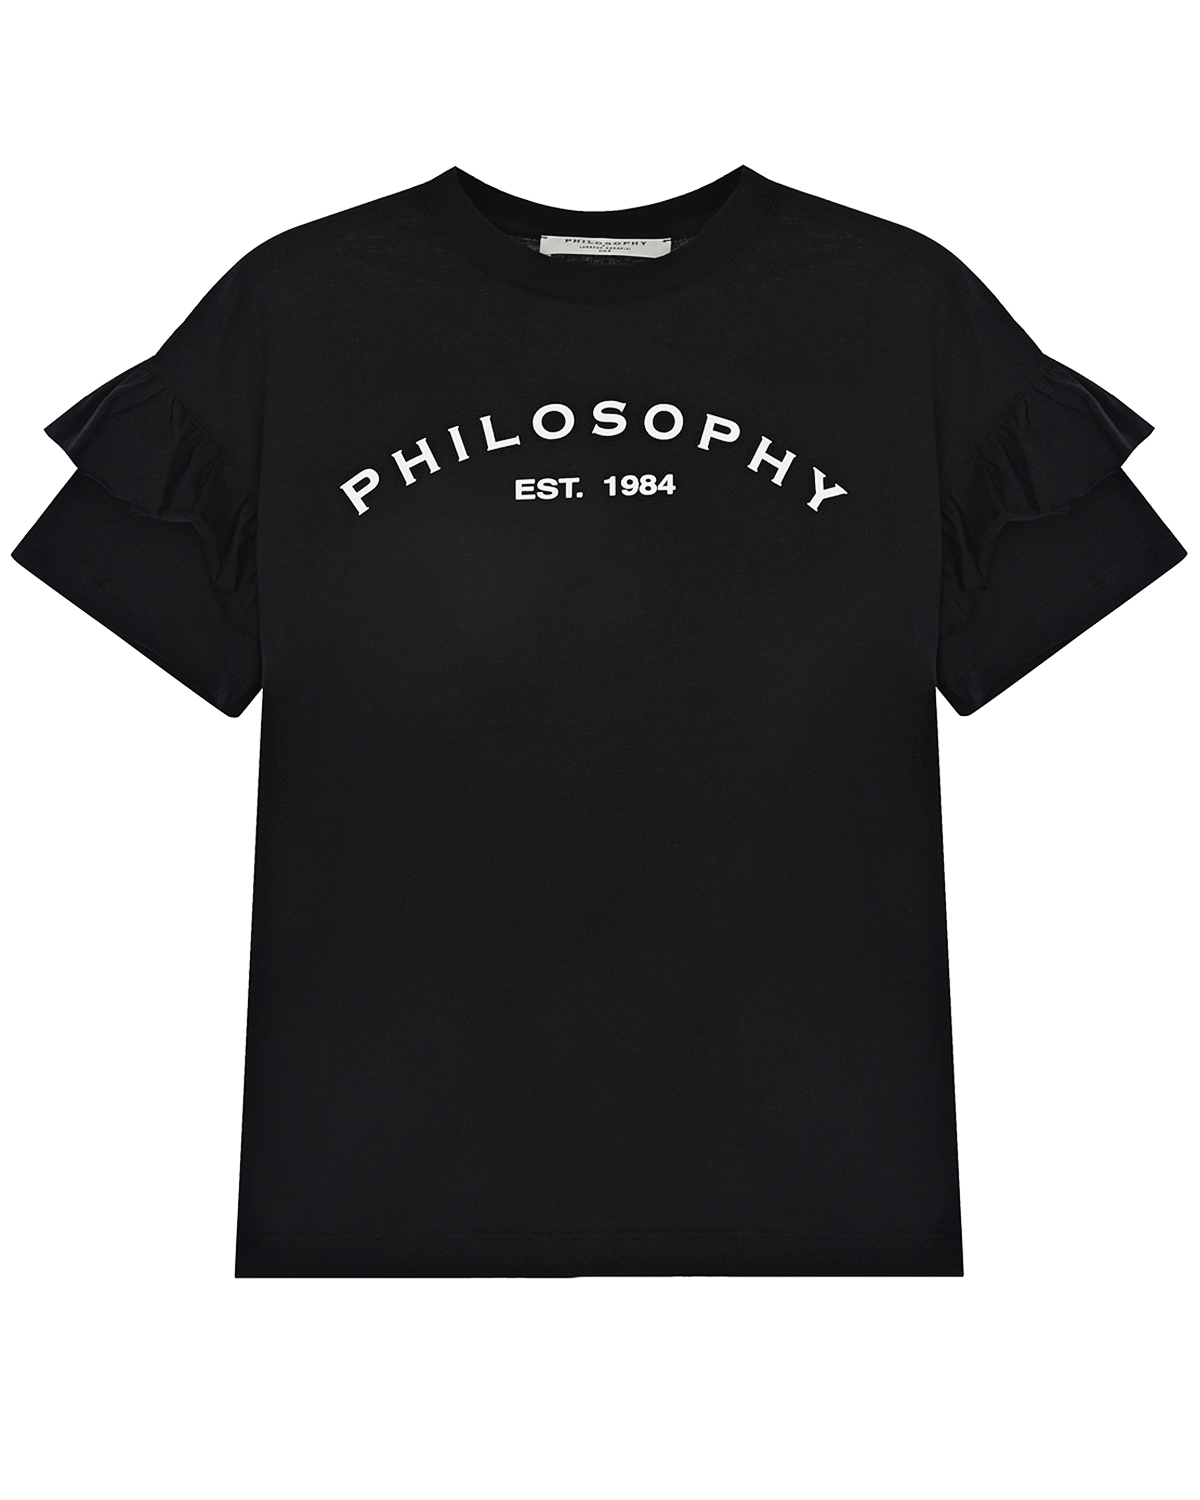 Купить Черная футболка с рюшами на рукавах Philosophy детская, Черный, 100%хлопок, 98%хлопок+2%эластан